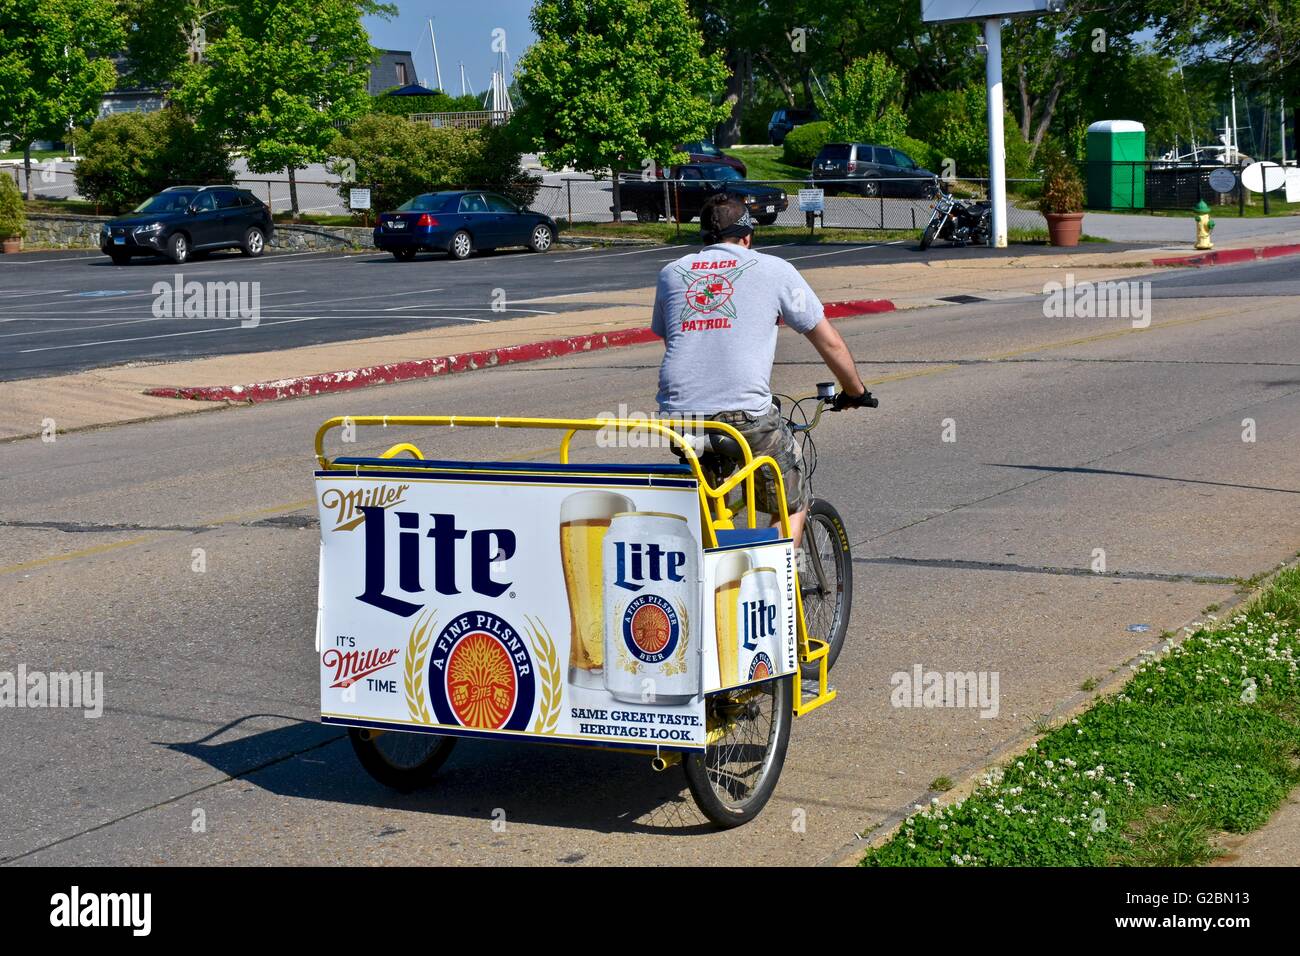 Un homme monté sur un vélo-taxi avec un Miller Lite affiche sur l'arrière du chariot Banque D'Images